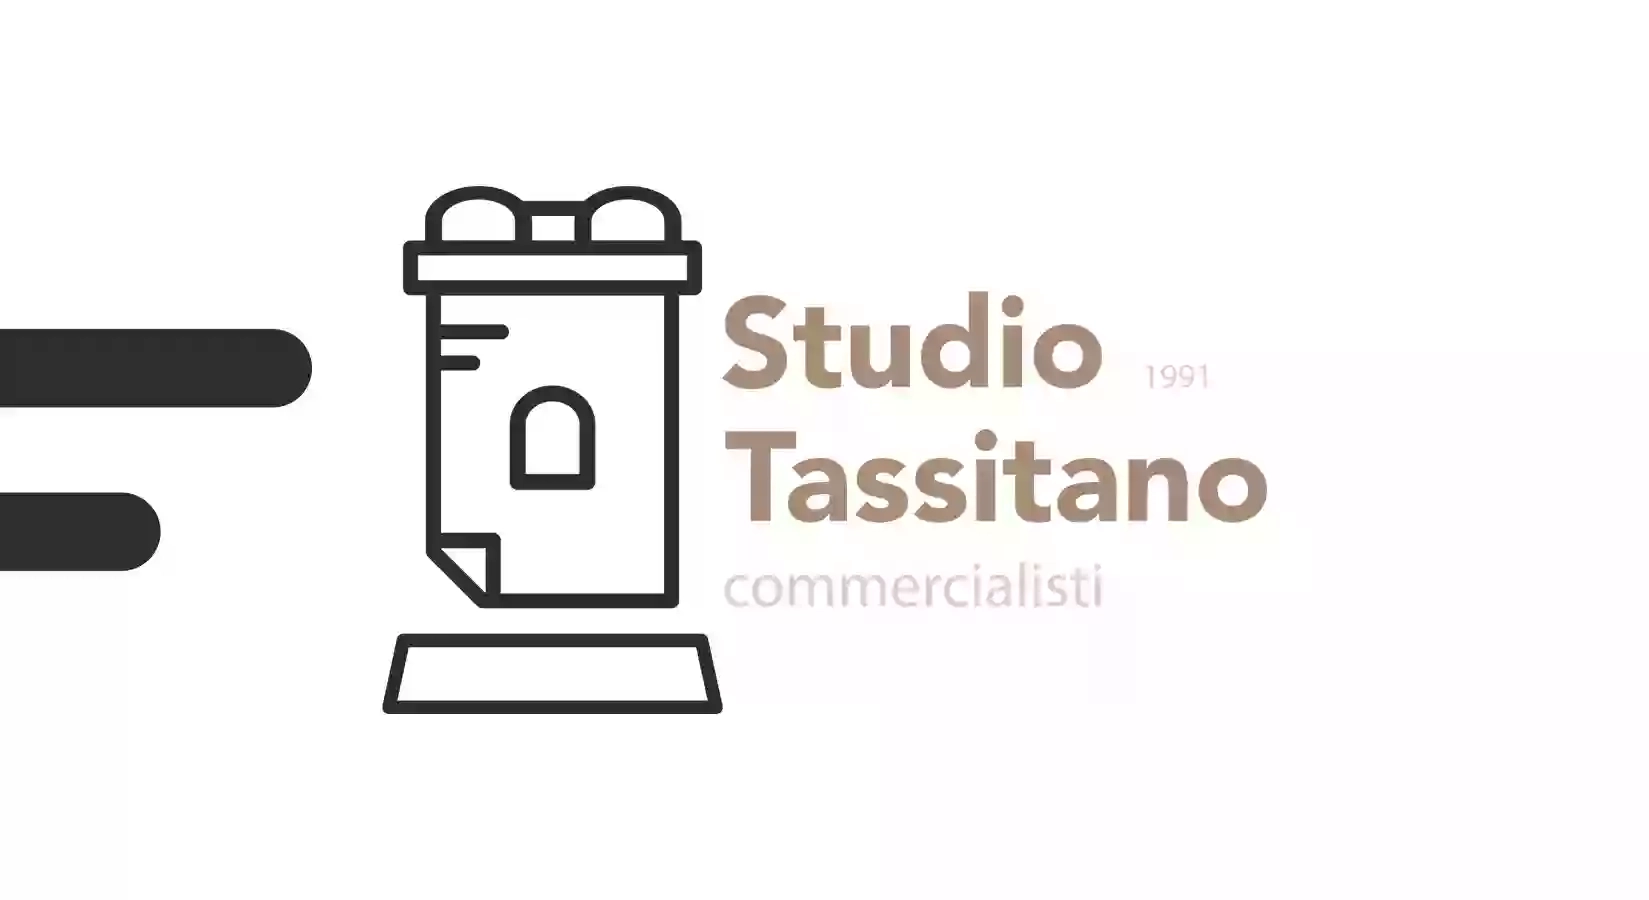 Studio Tassitano